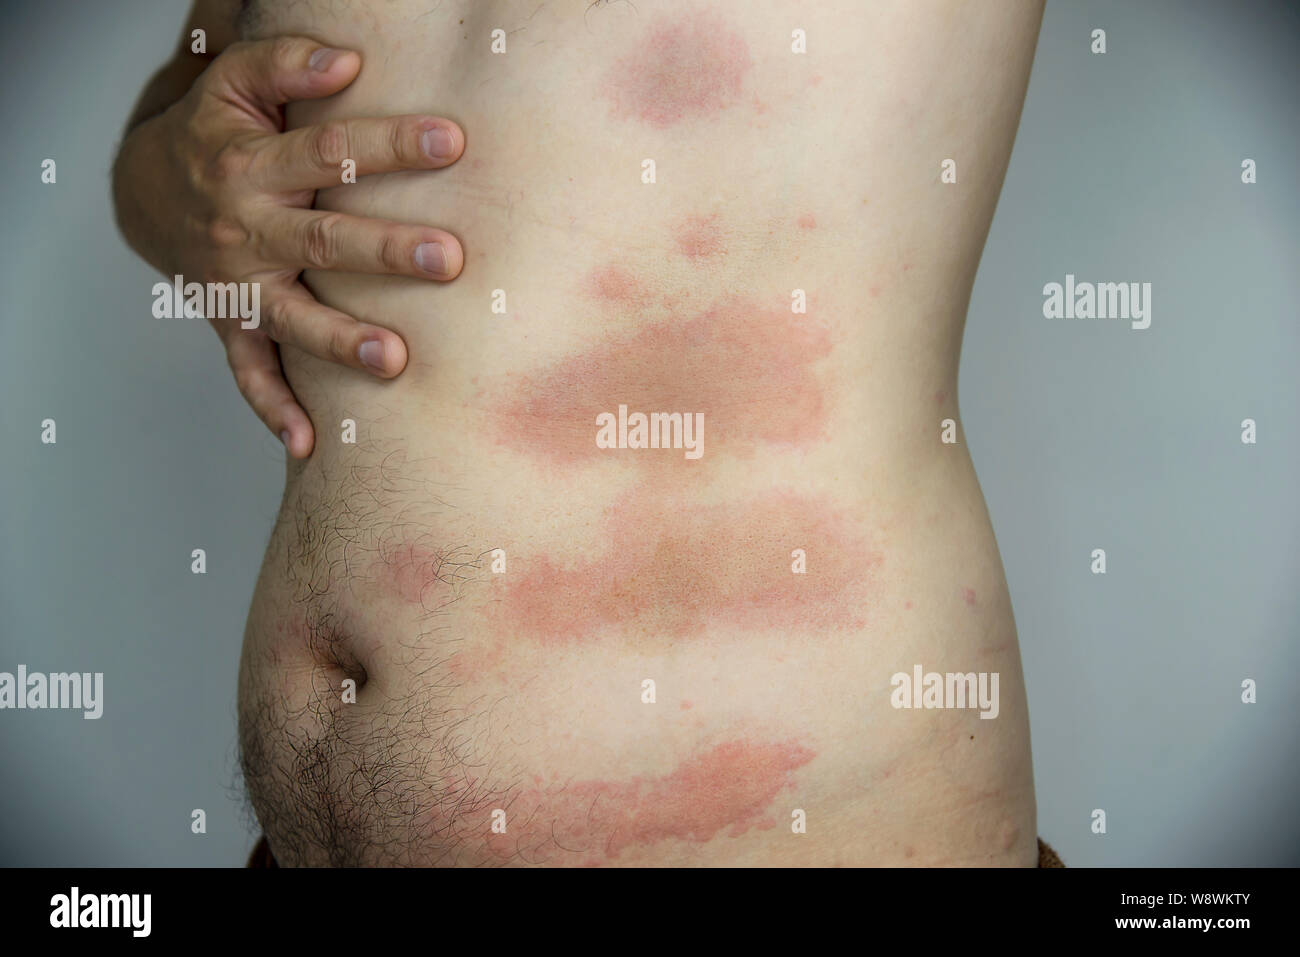 Allergia Pelle Immagini e Fotos Stock - Alamy